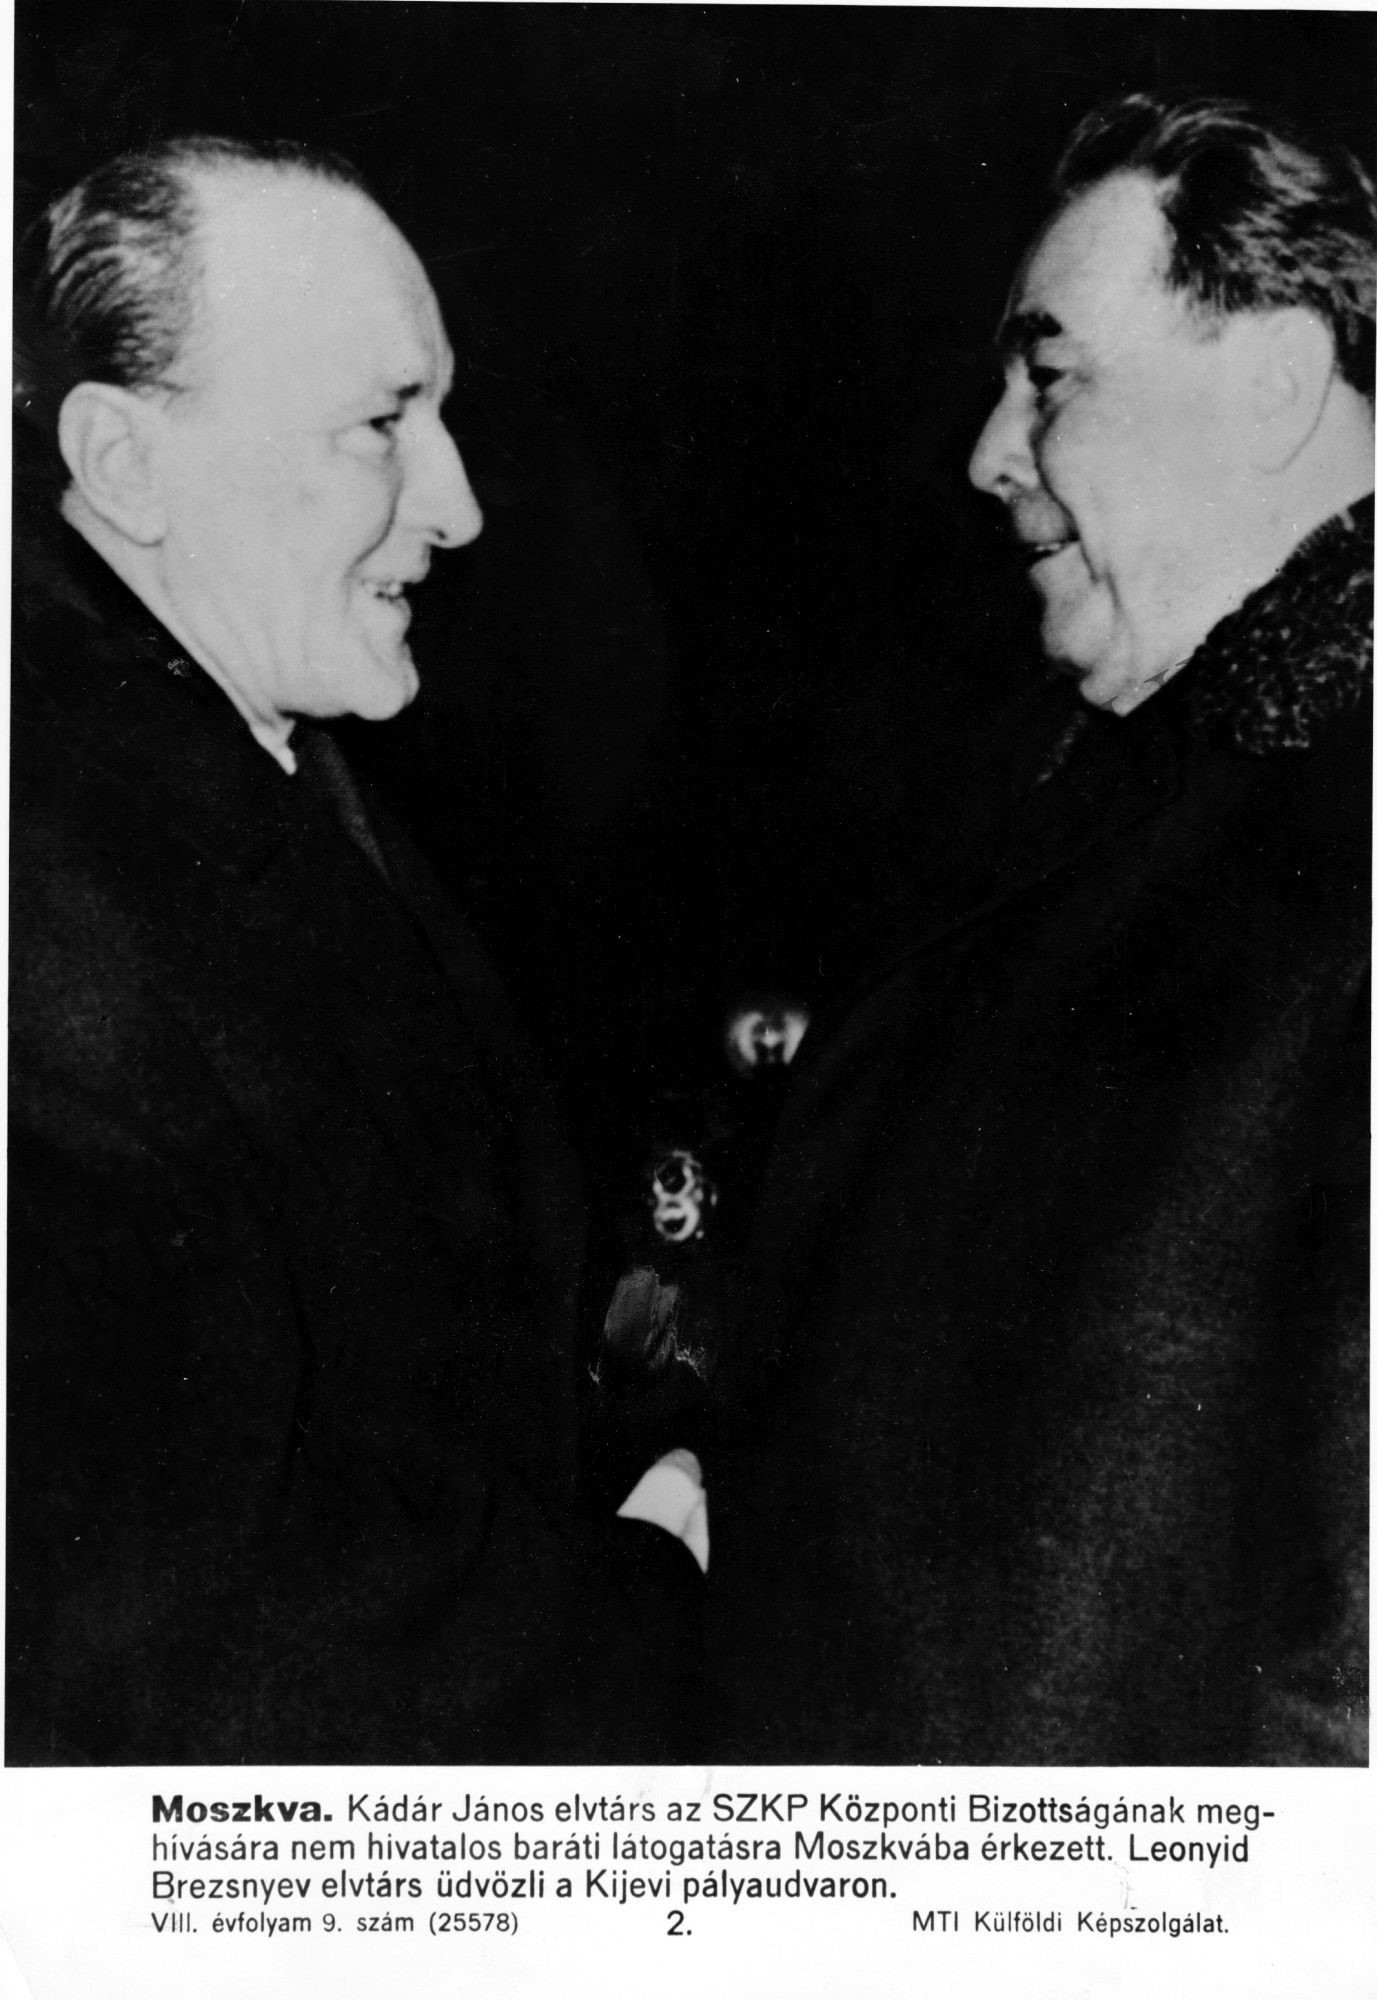 Kádár János és Leonyid Brezsnyev találkozása a Kijevi pályaudvaron (Rippl-Rónai Múzeum CC BY-NC-SA)